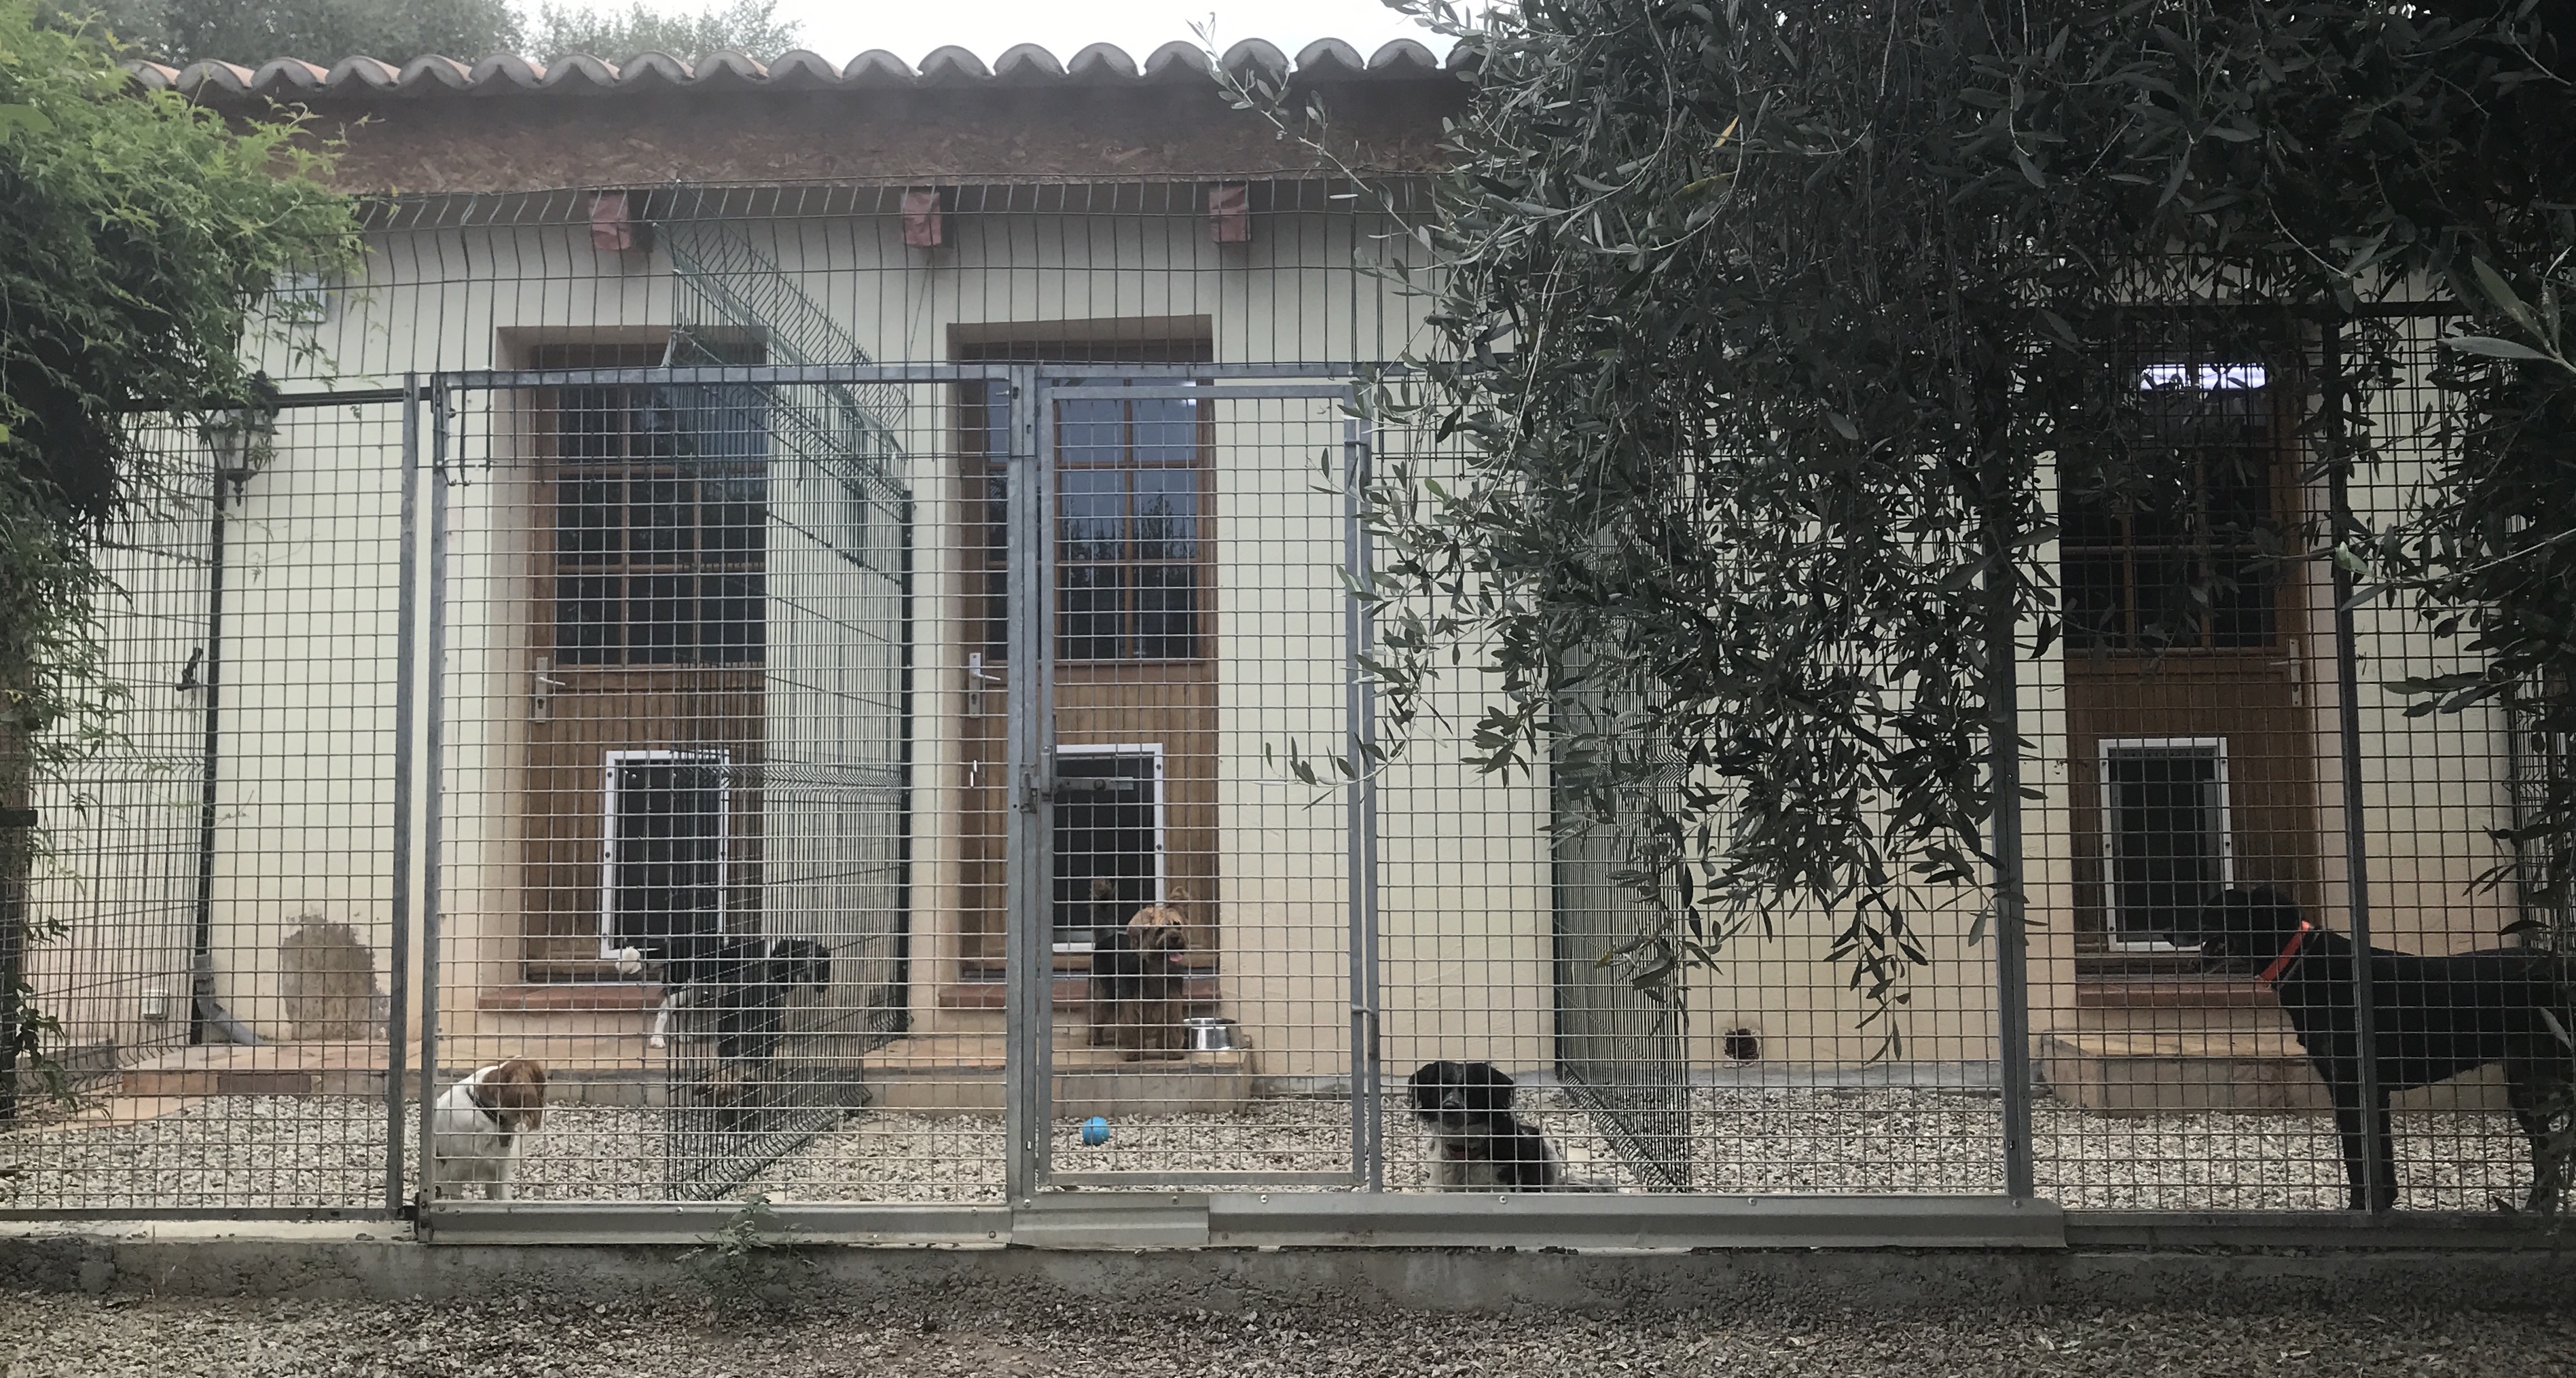 Les pensions pour animaux : Une aide souvent méconnue en Corse